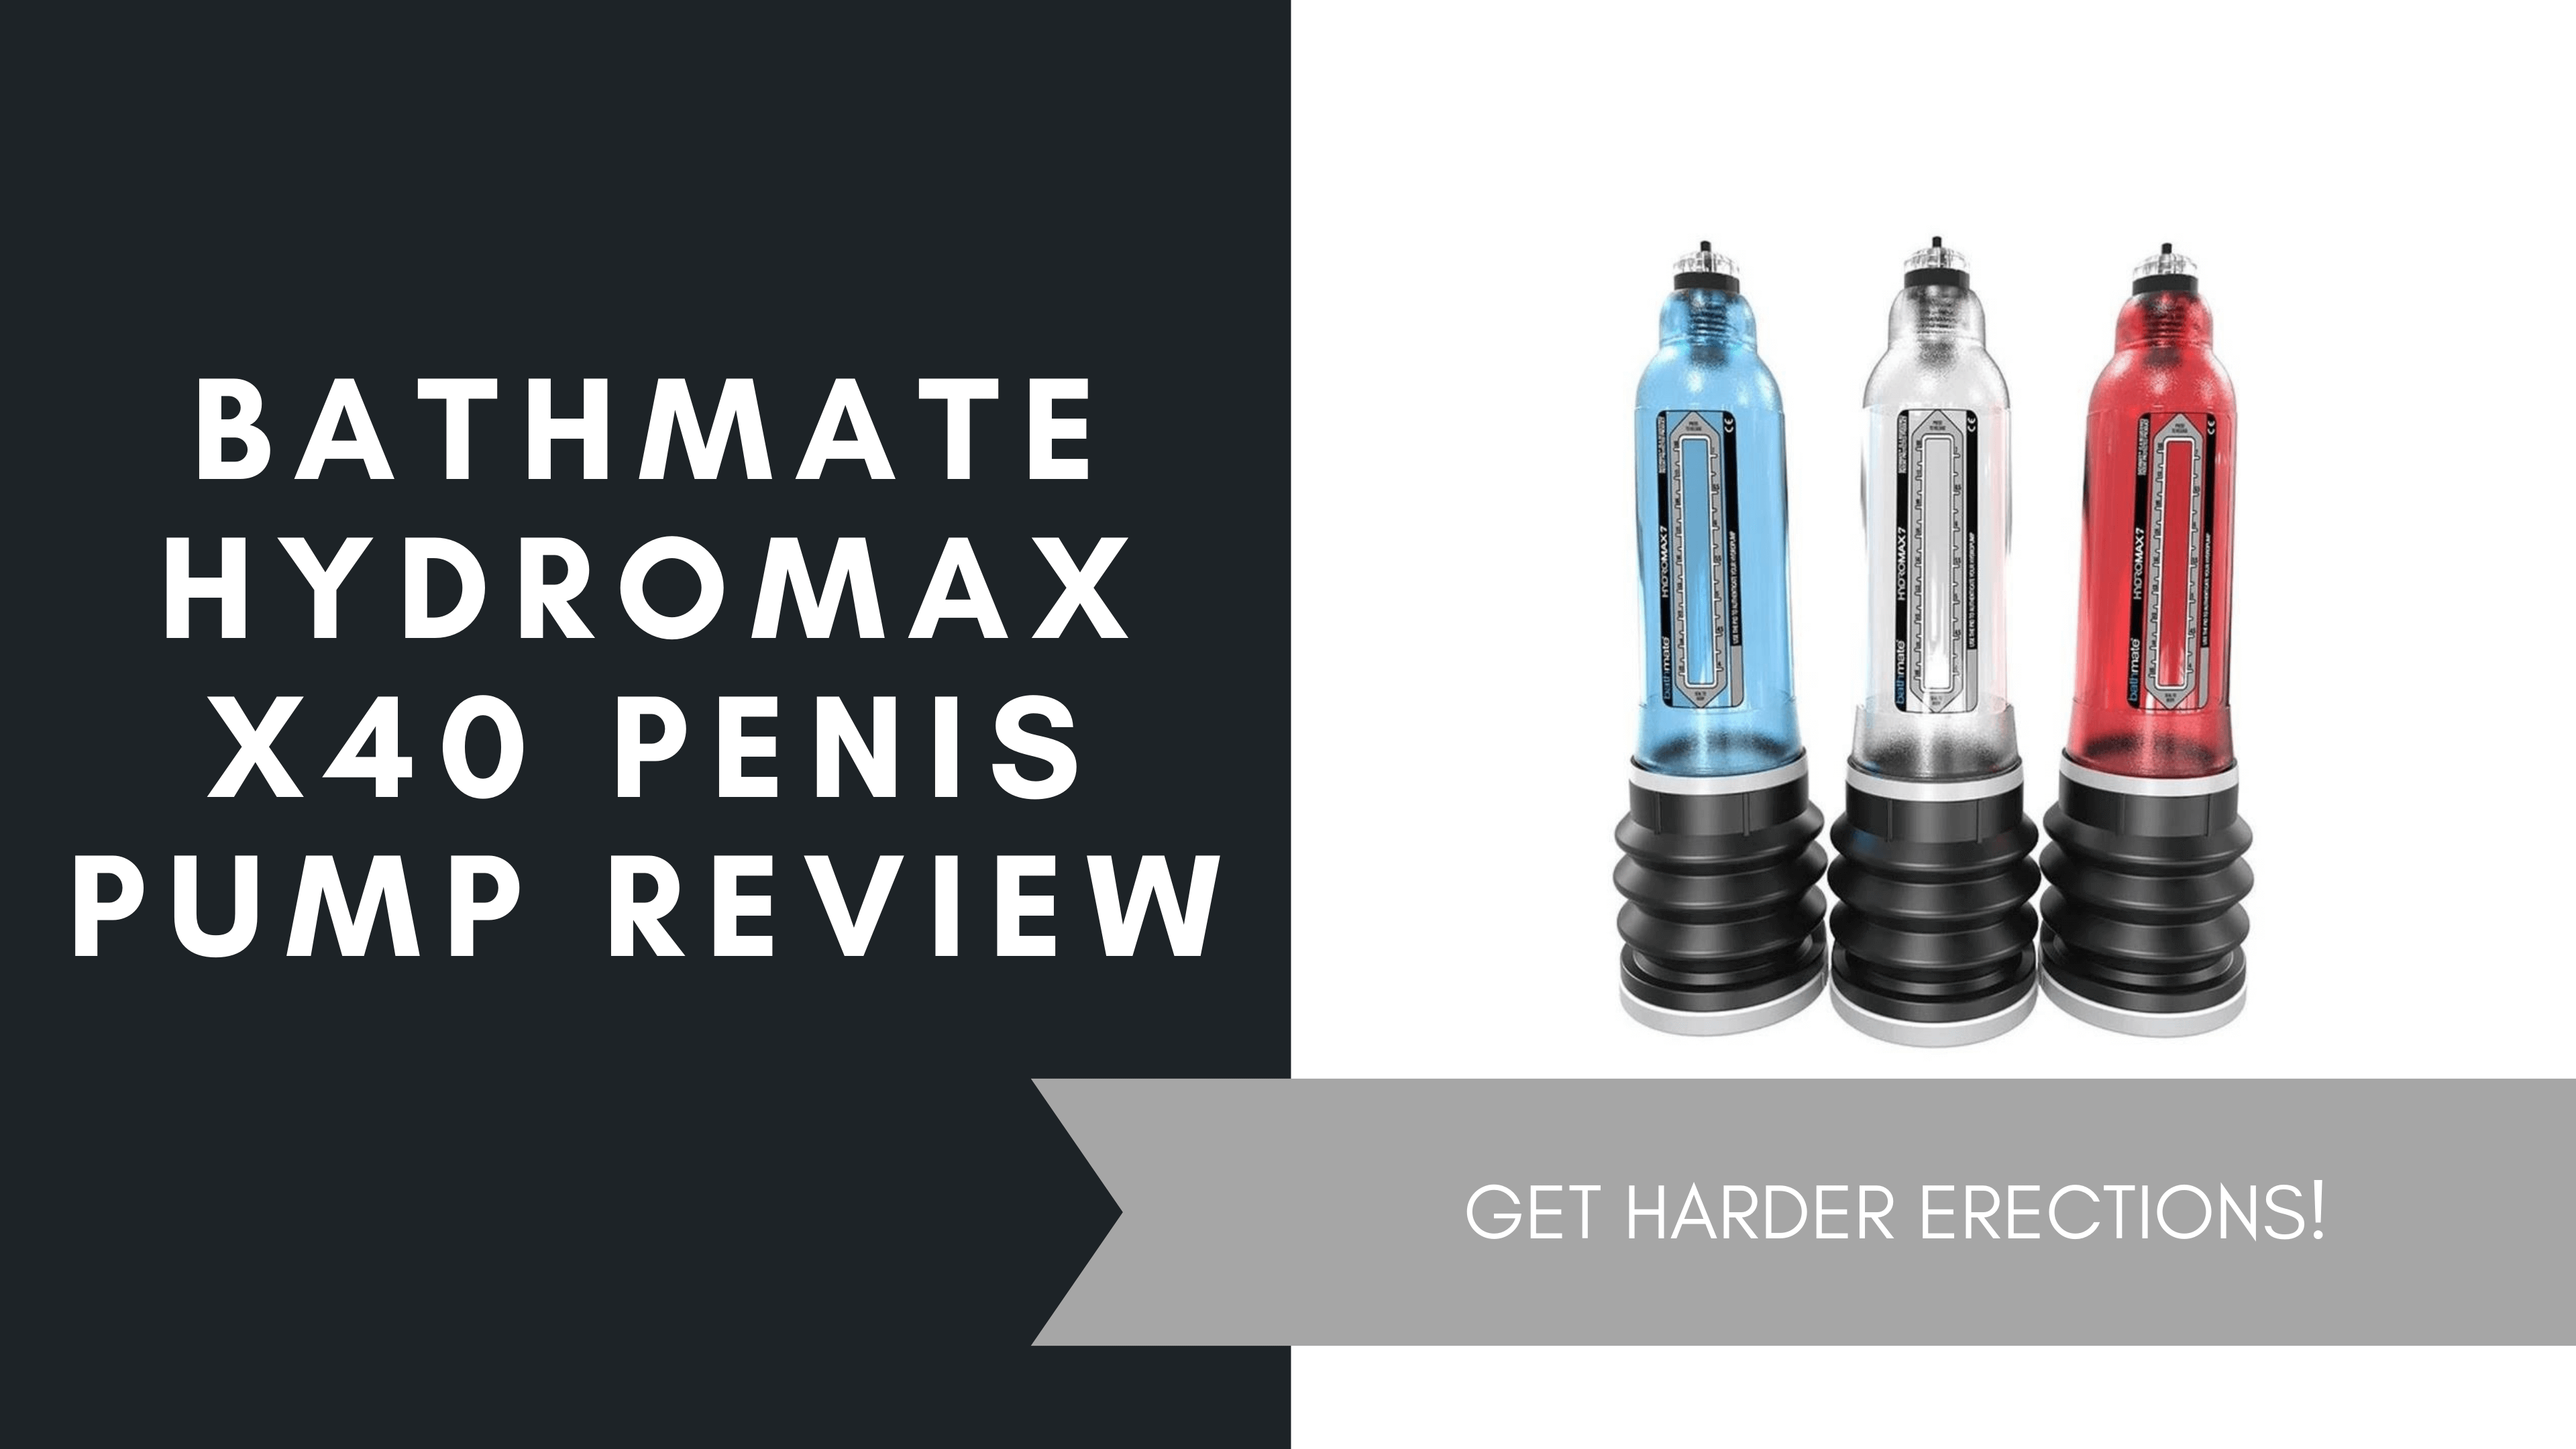 Bathmate Hydromax x40 Penis Pump Review, June 2021